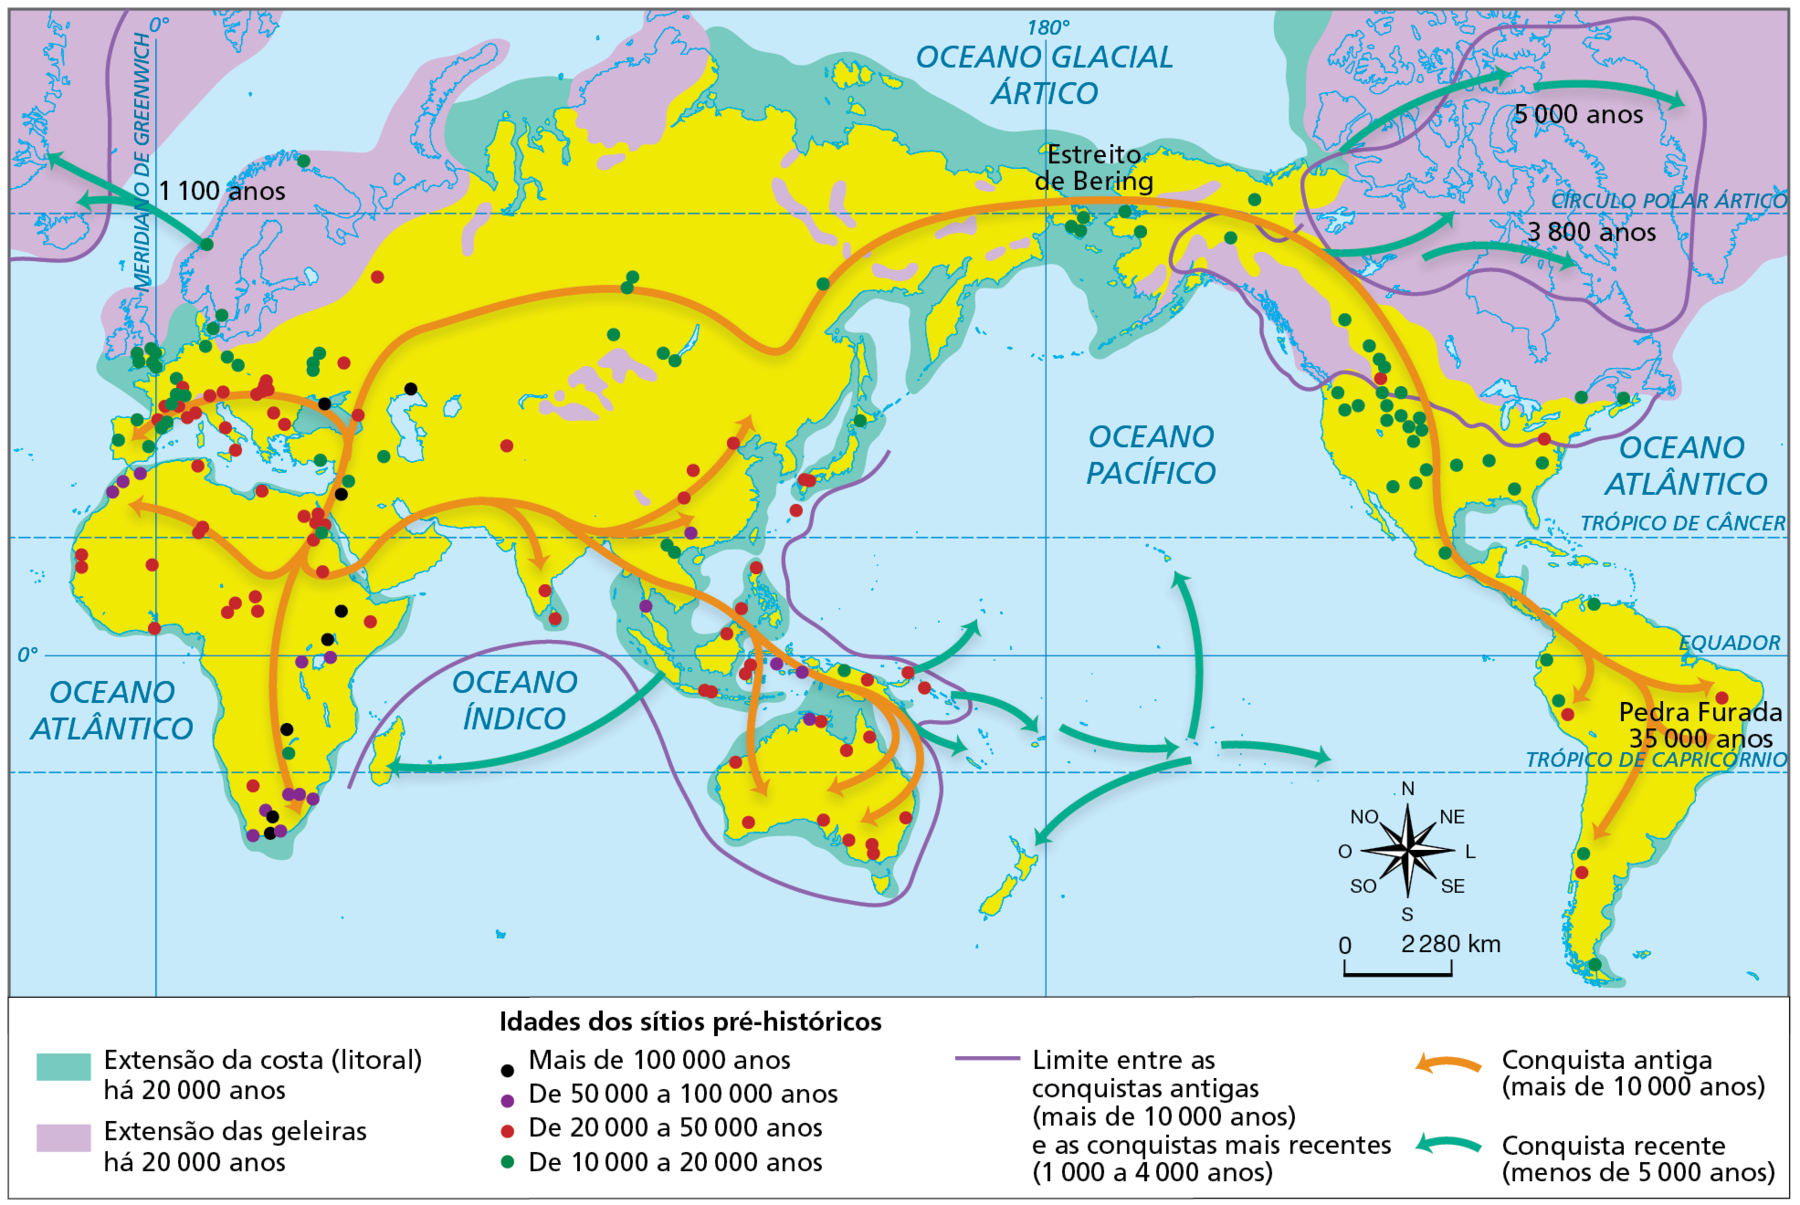 Mapa. A dispersão espacial do homem moderno (Homo sapiens) entre 160.000 e 1.000 anos atrás. Mapa representando a extensão da costa (litoral) dos continentes atualmente e há 20.000 anos; a extensão das geleiras há 20.000 anos; a localização e as idades dos sítios pré-históricos; além dos limites das conquistas ao longo do processo de dispersão espacial do homem moderno. 
Extensão da costa (litoral) há 20.000 anos: representada no mapa pela cor verde, compreendia um espaço maior da plataforma continental, estendendo por áreas que atualmente estão submersas. Essas áreas se destacavam à noroeste da Europa e na porção onde hoje se encontra o Mar Negro; ao norte e a leste da Ásia, formava uma massa contínua de terras com o atual Alasca, no continente americano, ao longo da faixa que corresponde ao Estreito de Bering; no sudeste da Ásia; no entorno da Oceania e da África; na porção onde hoje se encontra o Golfo do México; e na faixa a leste da América do Sul.   
Extensão das geleiras há 20.000 anos: representada pela cor lilás, compreendia a maior porção das terras que hoje formam o norte da América, da Europa e da Ásia. 
Localização e idades dos sítios pré-históricos: Mais de 100.000 anos (representados por pontos de preto): no leste da África, no oeste da Europa e no norte do Oriente Médio. De 50.000 a 100.000 anos (representados por pontos de roxo): pontos no sul, no leste e no norte da África; pontos no sudeste da Ásia e na Oceania. De 20.000 a 50.000 anos (representados por pontos de vermelho): pontos concentrados na faixa central e no sul da África; pontos concentrados no sul da Europa, no sudeste da Ásia e espalhados por toda a Oceania. De 10.000 a 20.000 anos (representados por pontos de verde): pontos espalhados por toda a Europa; pontos no sul da África, no Oriente Médio e parte central da Ásia; pontos na área próxima ao Estreito de Bering; pontos concentrado na faixa leste da América do Norte e na costa oeste da América do Sul. Conquista antiga, mais de 10.000 anos (rotas representadas por seta em laranja): dispersão a partir da porção central da África para áreas ao sul e à oeste do continente; da África, segue em direção à Europa e Oriente Médio, avançando pelo sul e sudeste asiático até a Oceania, e pela parte central da Ásia até adentrar a América.  
Conquista recente, menos de 5.000 anos (rotas representadas por seta em verde): dispersão a partir da Península Escandinava, no norte da Europa, e ao norte da América do Norte; dispersão a partir do sudeste da Ásia em direção às ilhas dos oceanos Índico e Pacífico.  
Na parte inferior, à direita, rosa dos ventos e escala de 0 a 2.280 quilômetros.